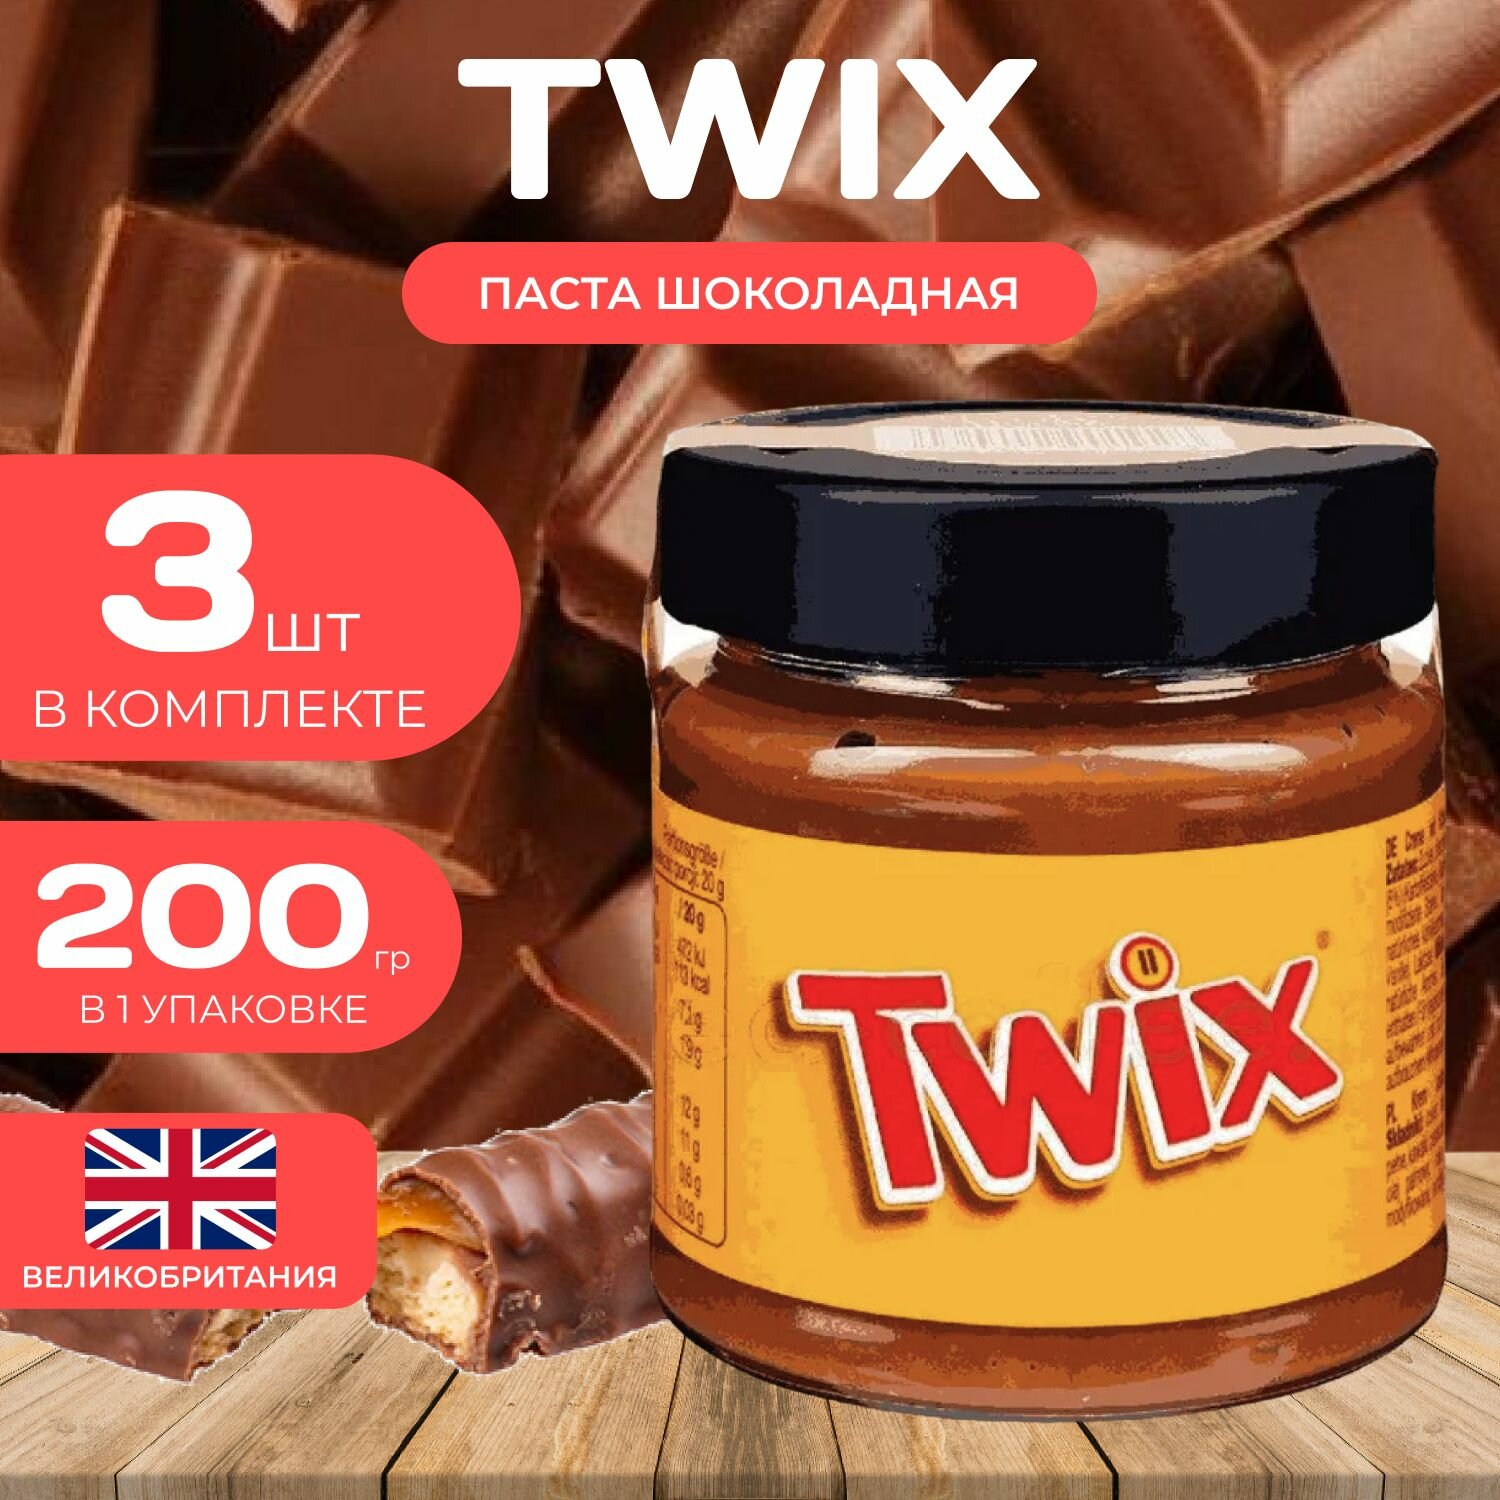 Twix Шоколадная паста 200 гр. (3 шт.) с кусочками печенья Твикс